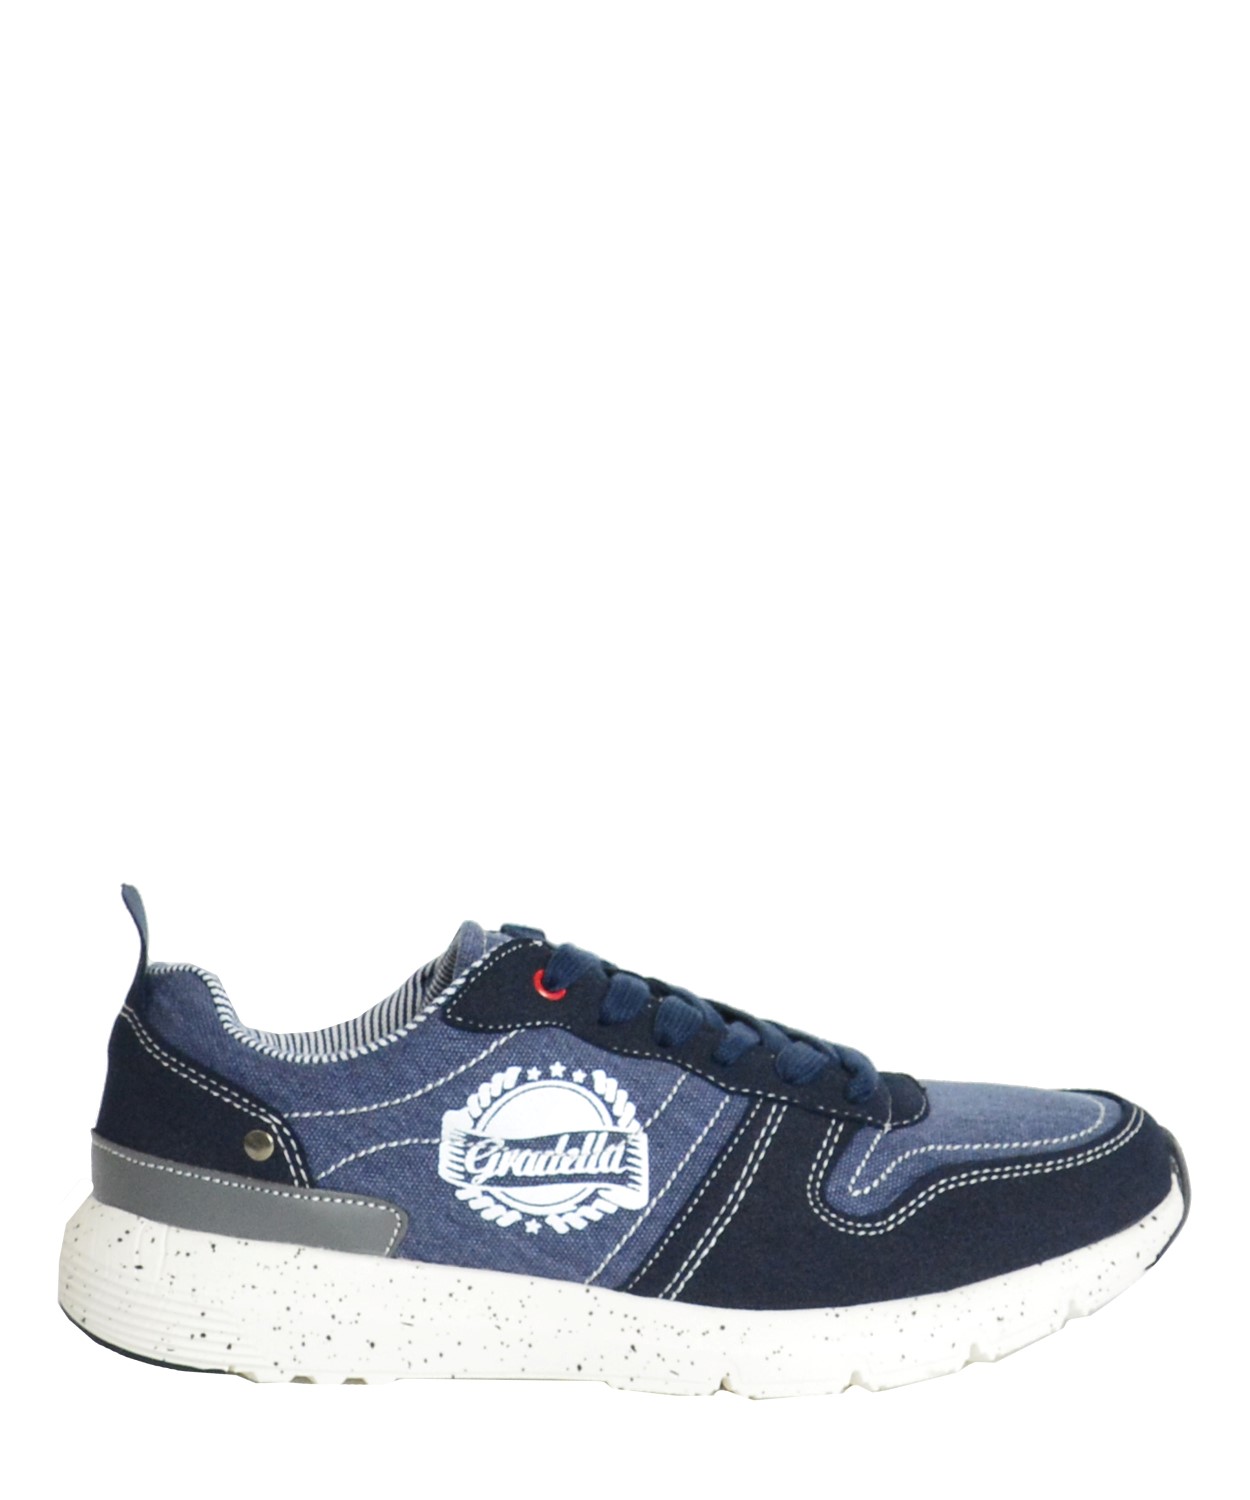 Ανδρικά Sneakers παπούτσια μπλε υφασμάτινα K70420C